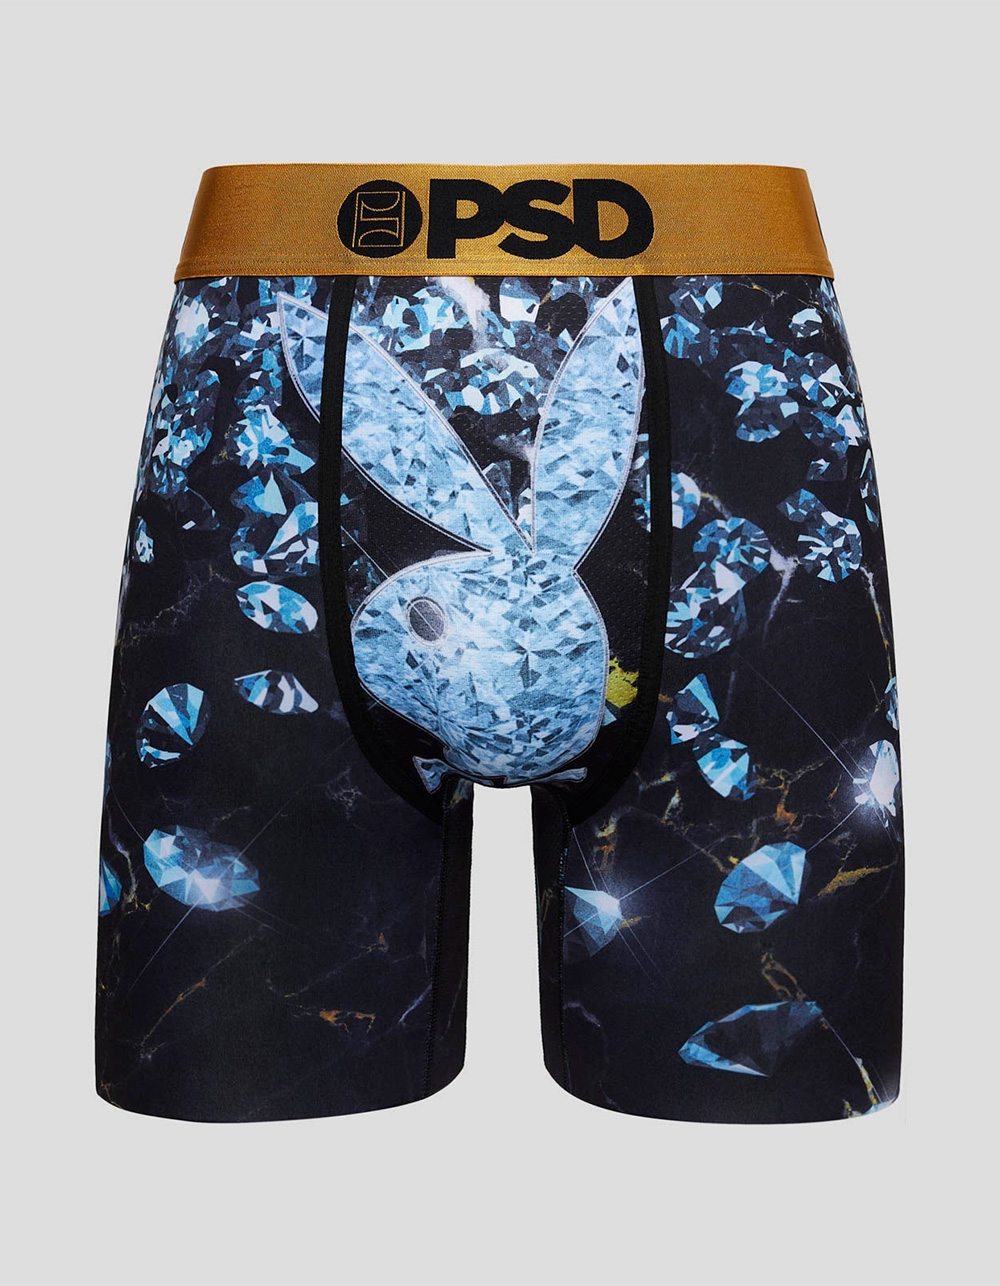 PSD mens Underwear